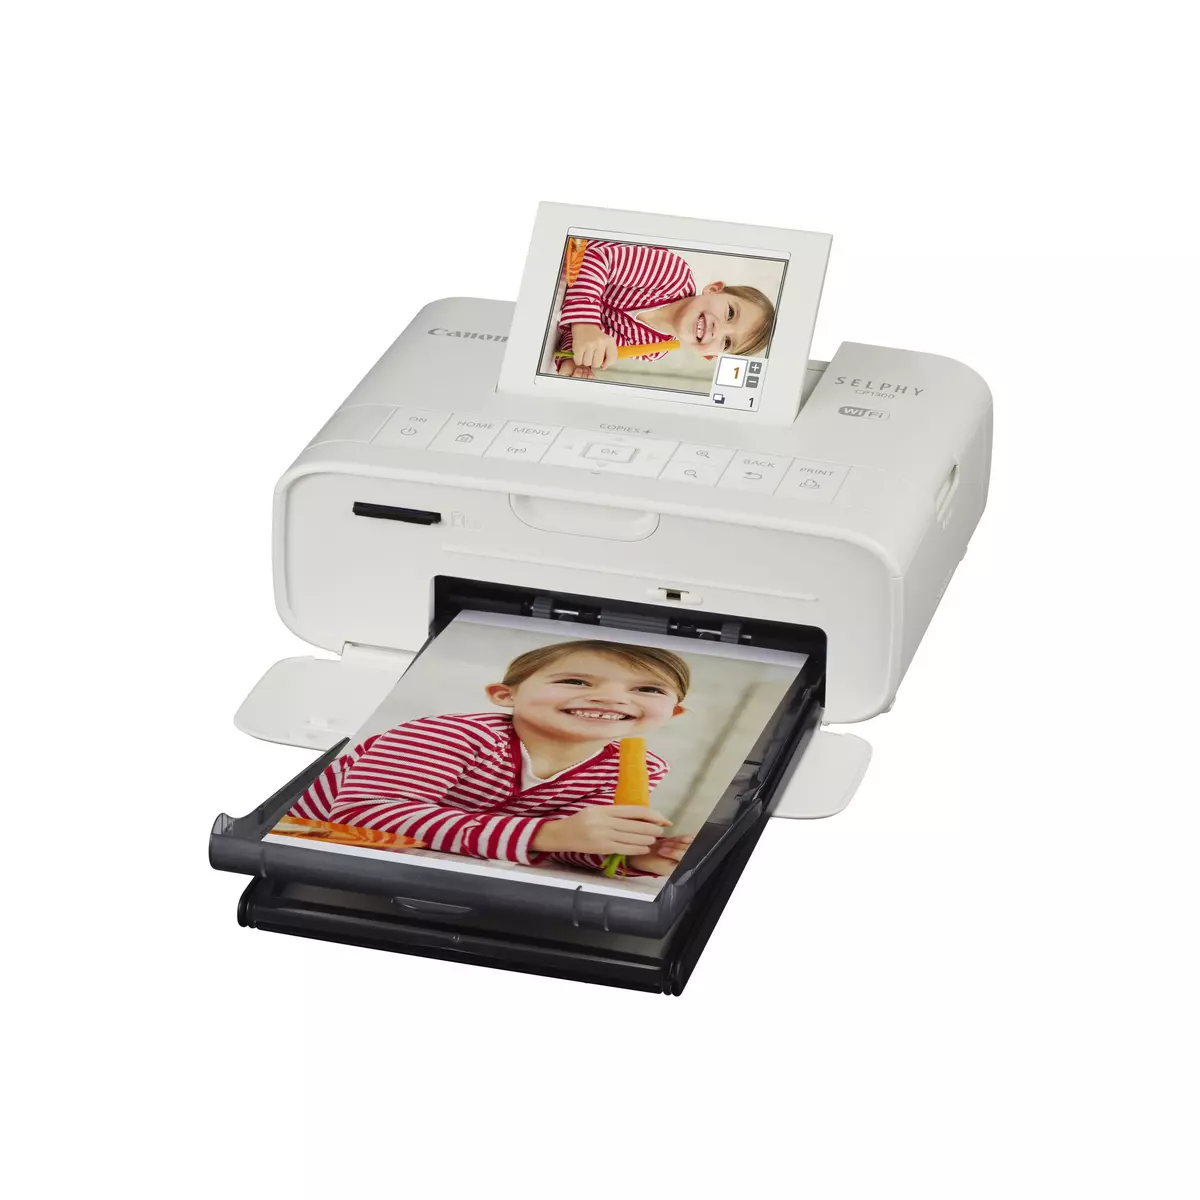 CANON Imprimante photo portable - Blanc - Selphy CP1300 pas cher